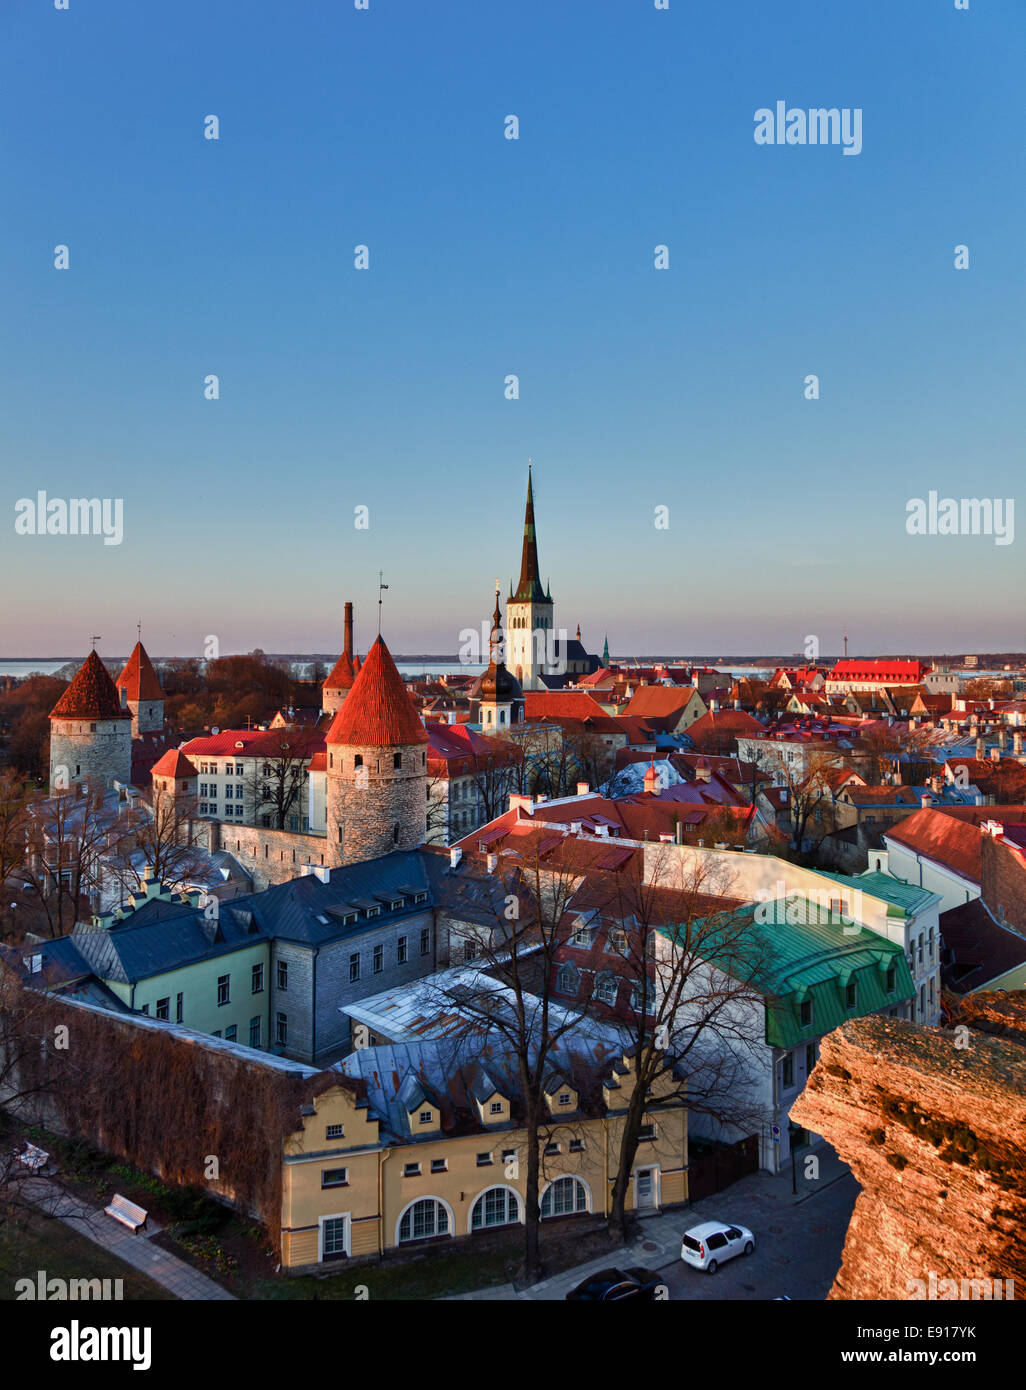 Vieille ville de Tallinn, Estonie Banque D'Images